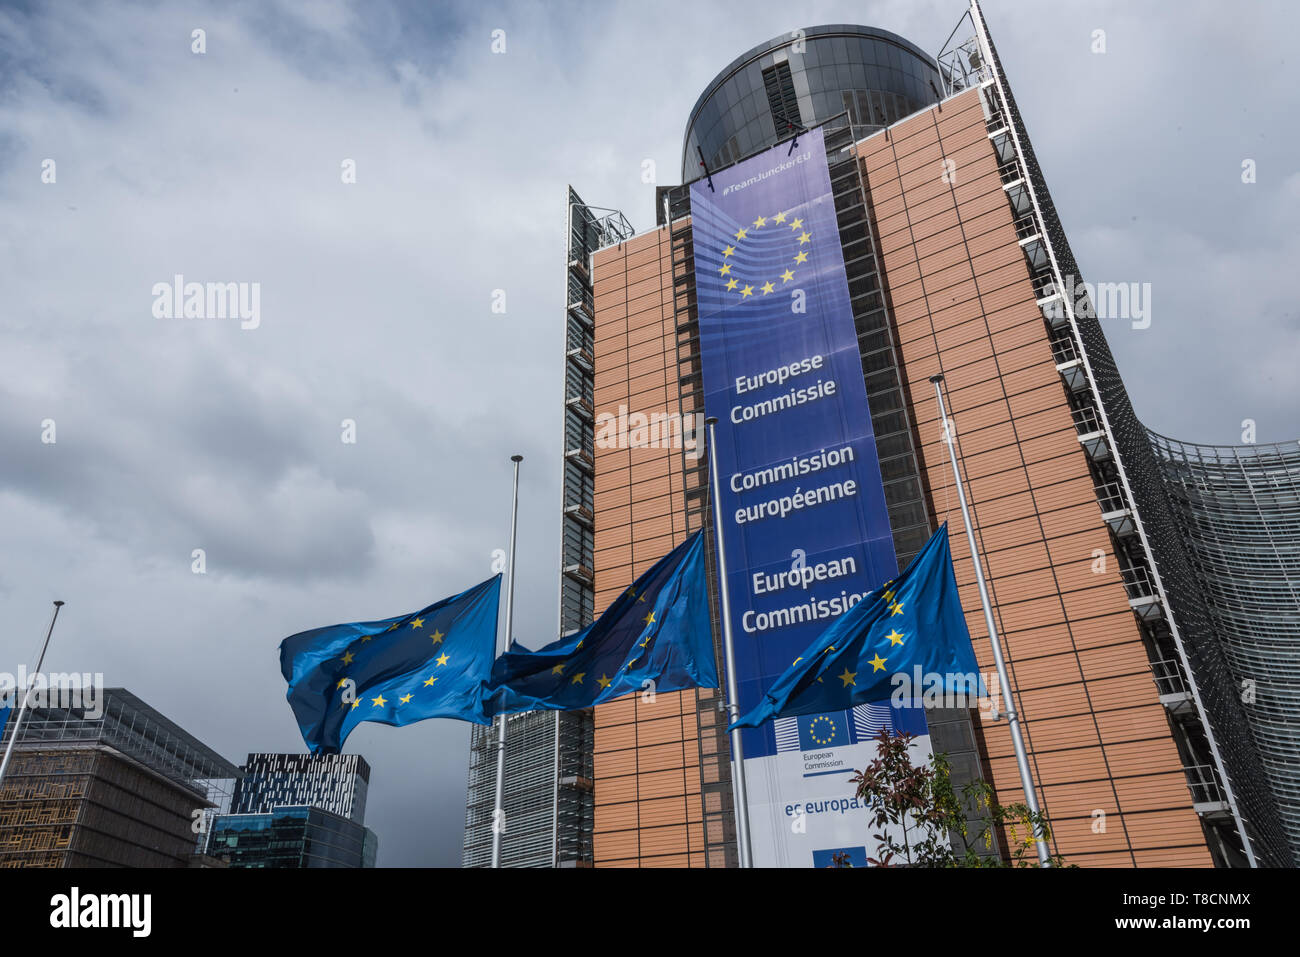 Brüssel, Europaviertel, Europäische Kommission, Berlaymont-Gebäude Das 1963 bis 1967 erbaute Berlaymont-Gebäude in Brüssel ist der Sitz der Europäisch Stock Photo